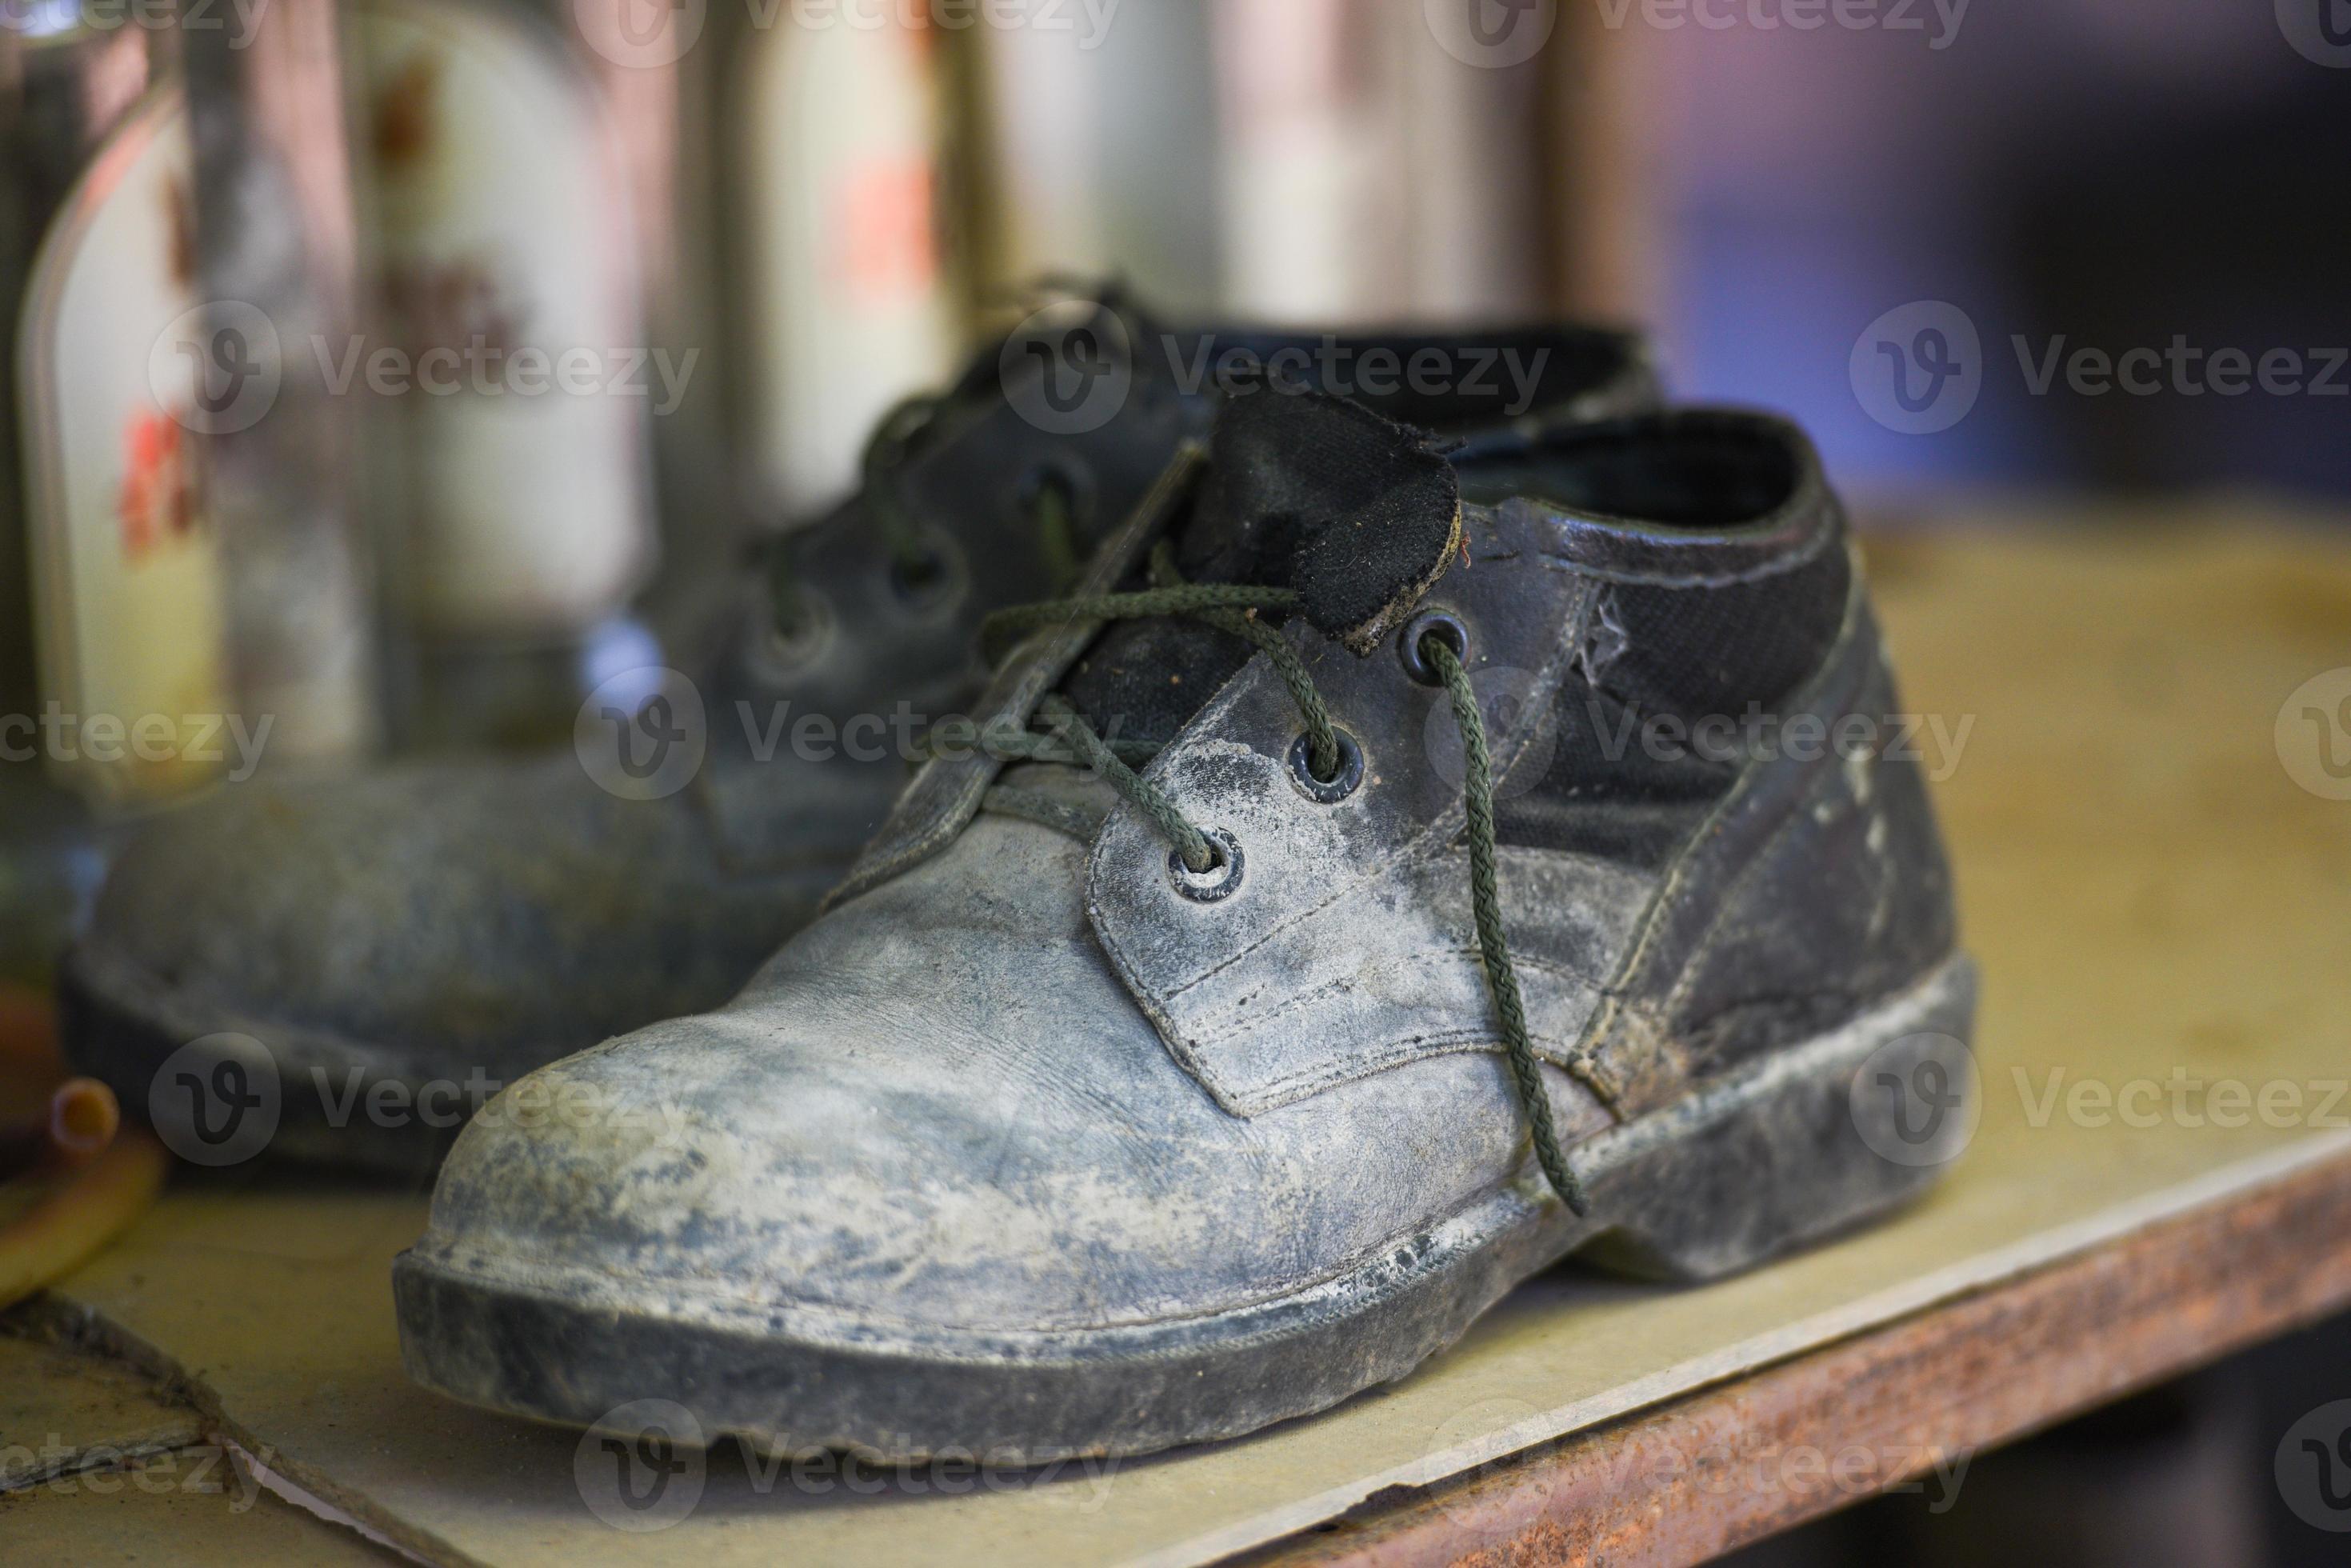 https://static.vecteezy.com/ti/foto-gratuito/p2/4463753-stivali-vecchi-scarpe-nere-sporco-sulla-scarpiera-stivali-militari-gratuito-foto.JPG